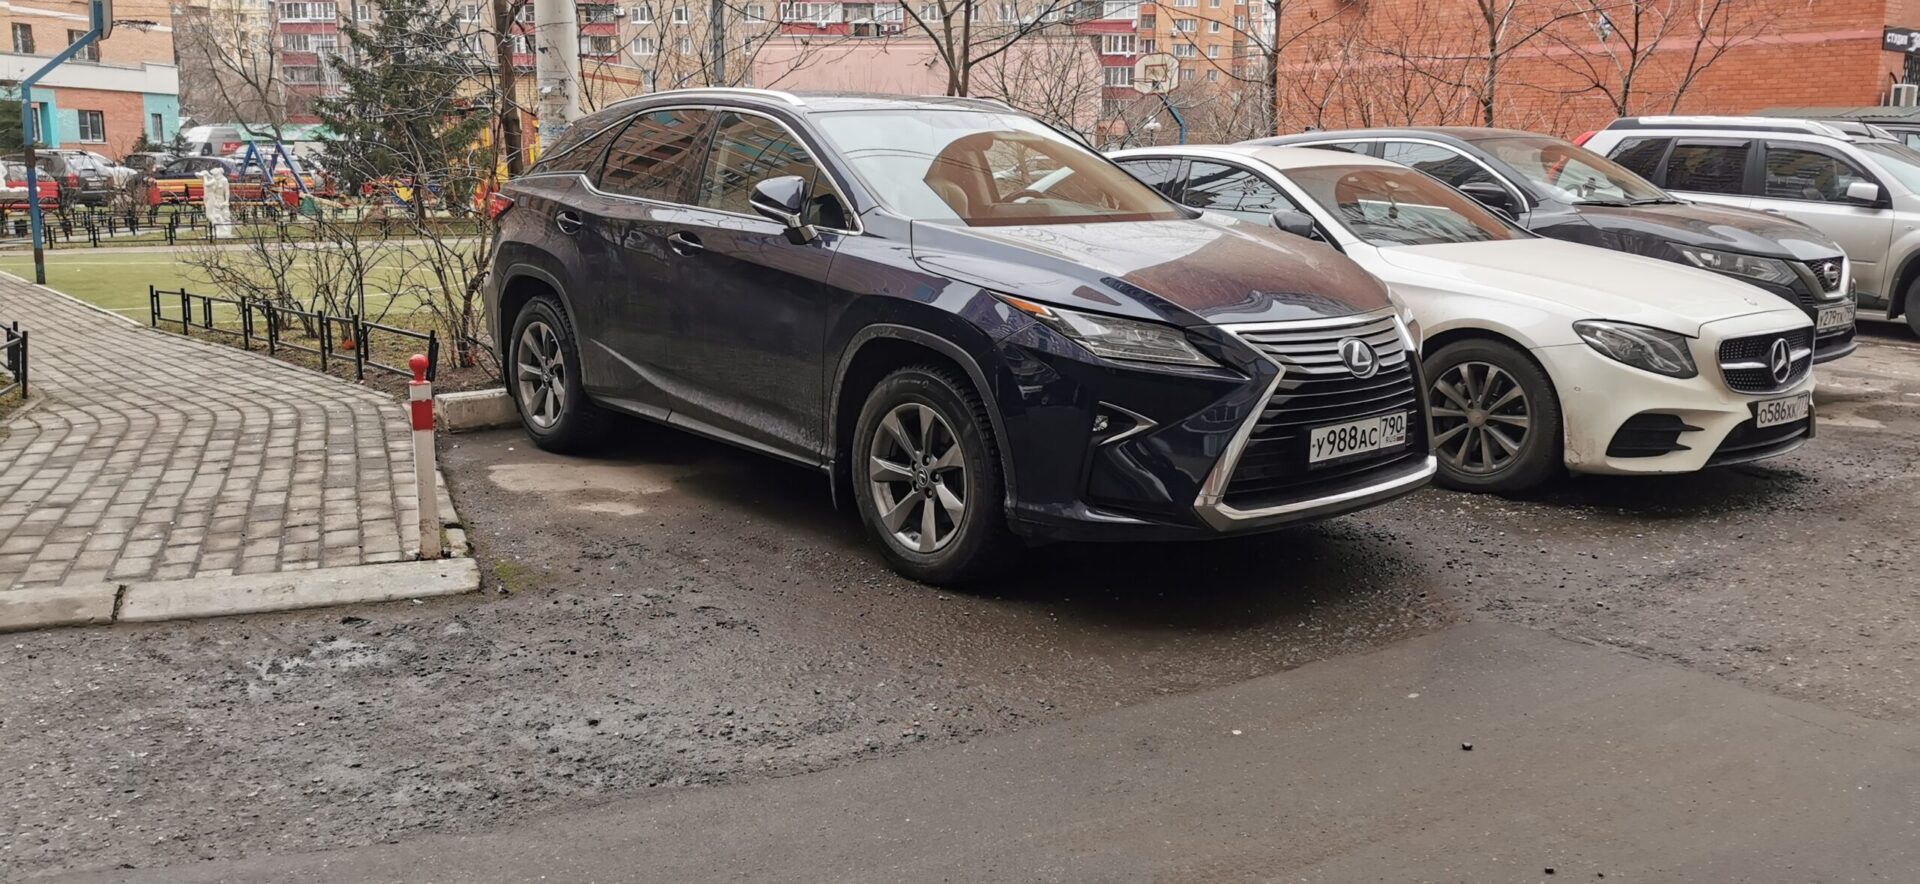 Модели Lexus вошли в 10 японских автомобилей, которые оказались не нужны гражданам в РФ